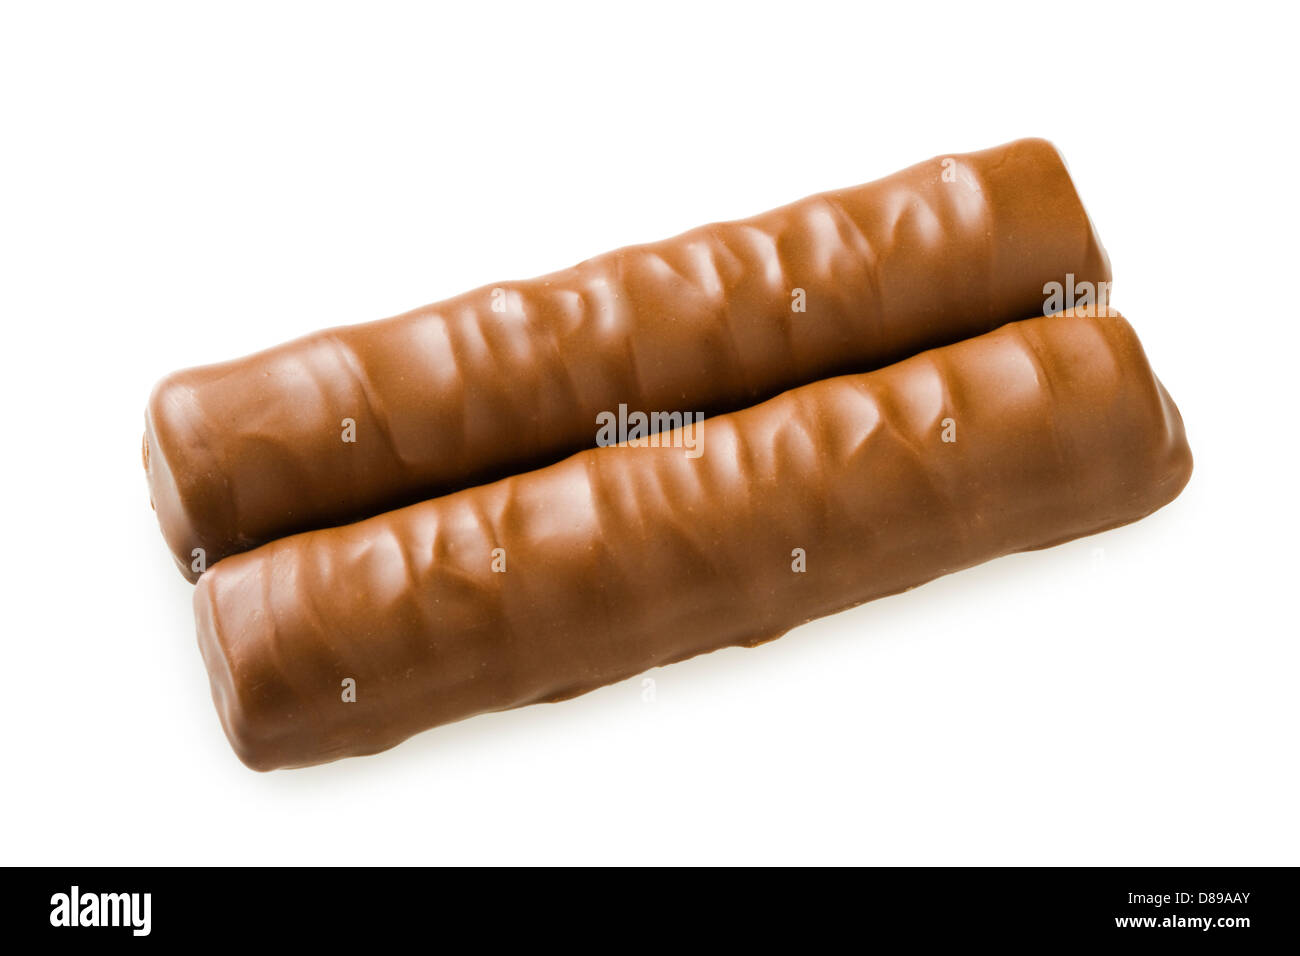 Chocolate bars Stock Photo